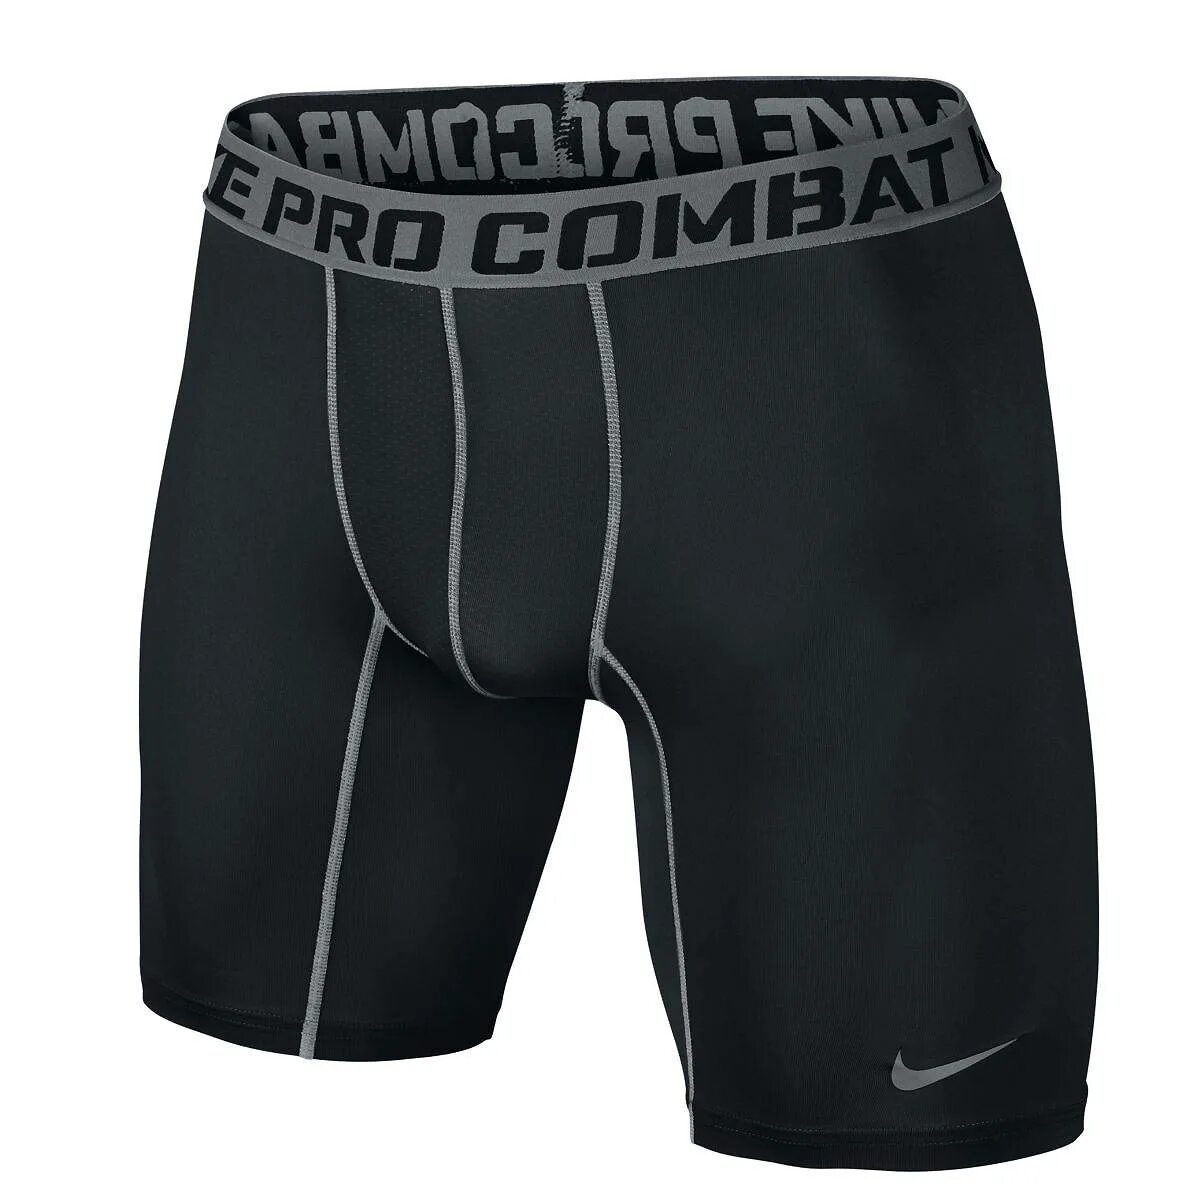 Купить компрессионные шорты. Компрессионка Nike Pro Combat. Компрессионные шорты Nike Pro Combat. Nike Pro Combat Dri-Fit Compression шорты. Термо Nike Pro Combat.